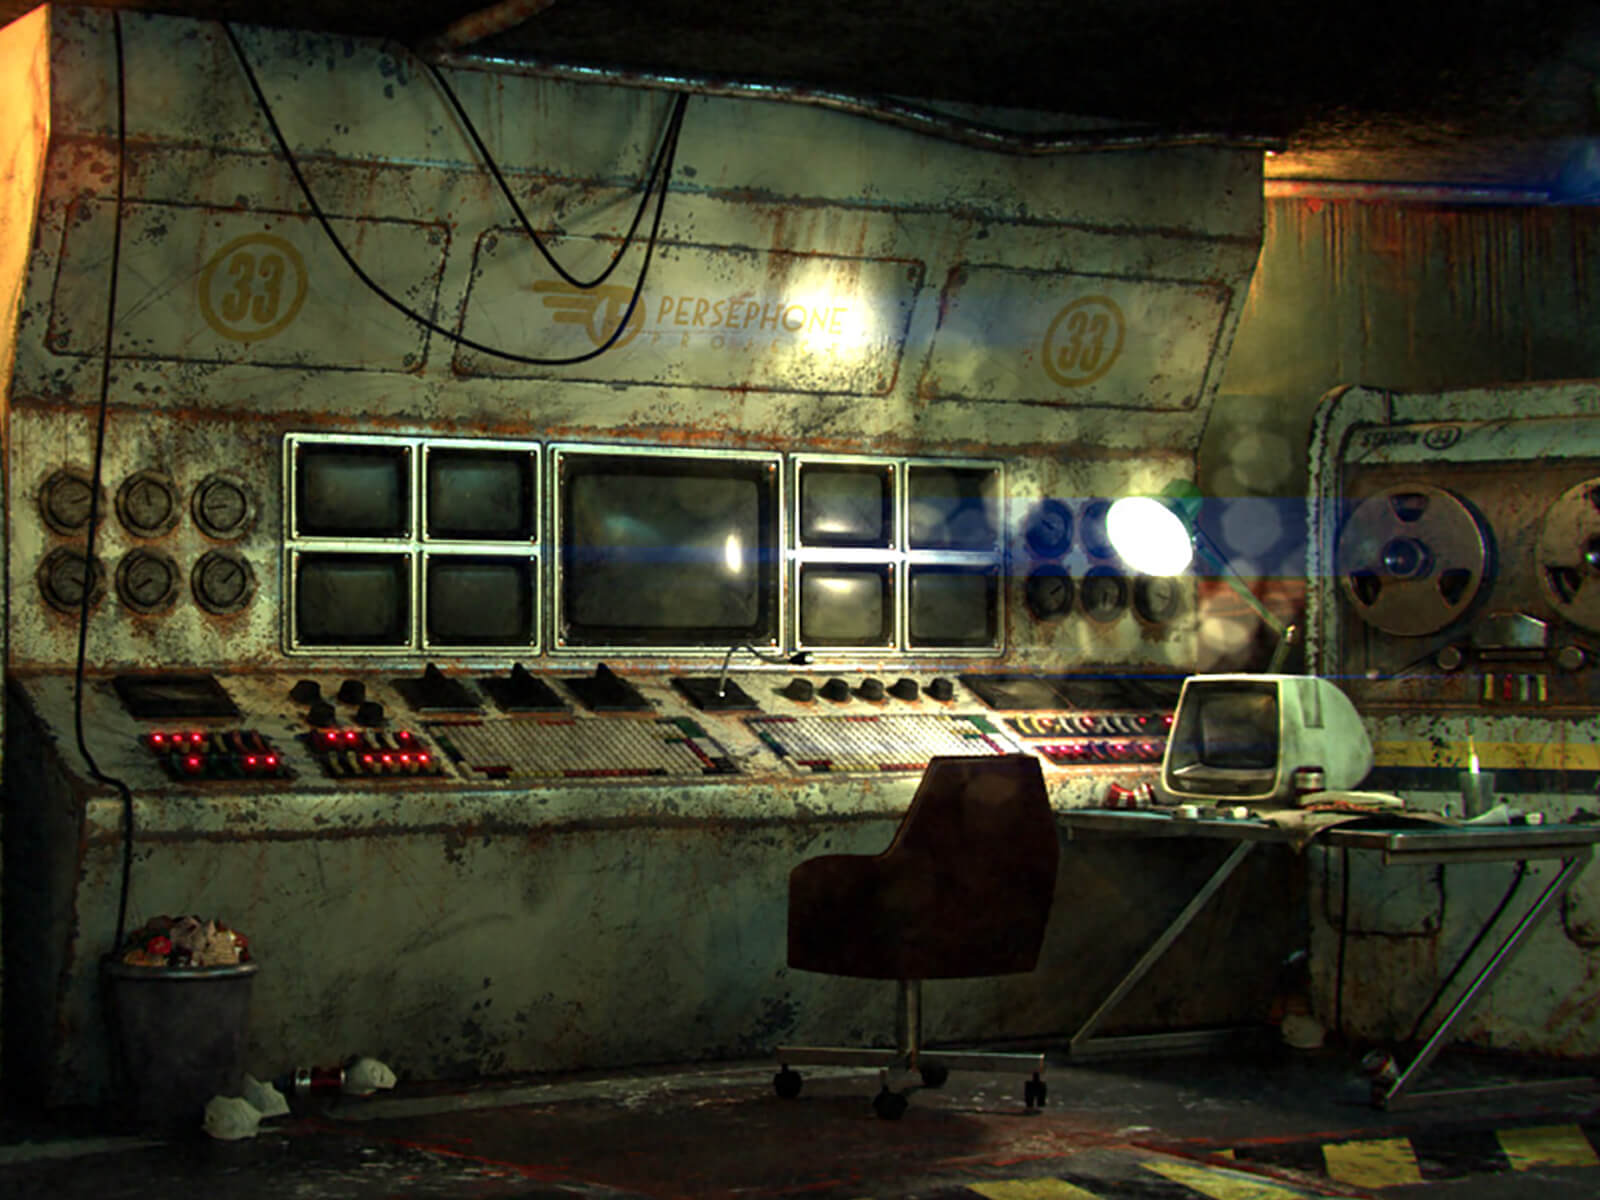 En un búnker subterráneo, una consola de control en ruinas co una electrónica obsoleta, rodeada de monitores y computadoras de cinta magnética.